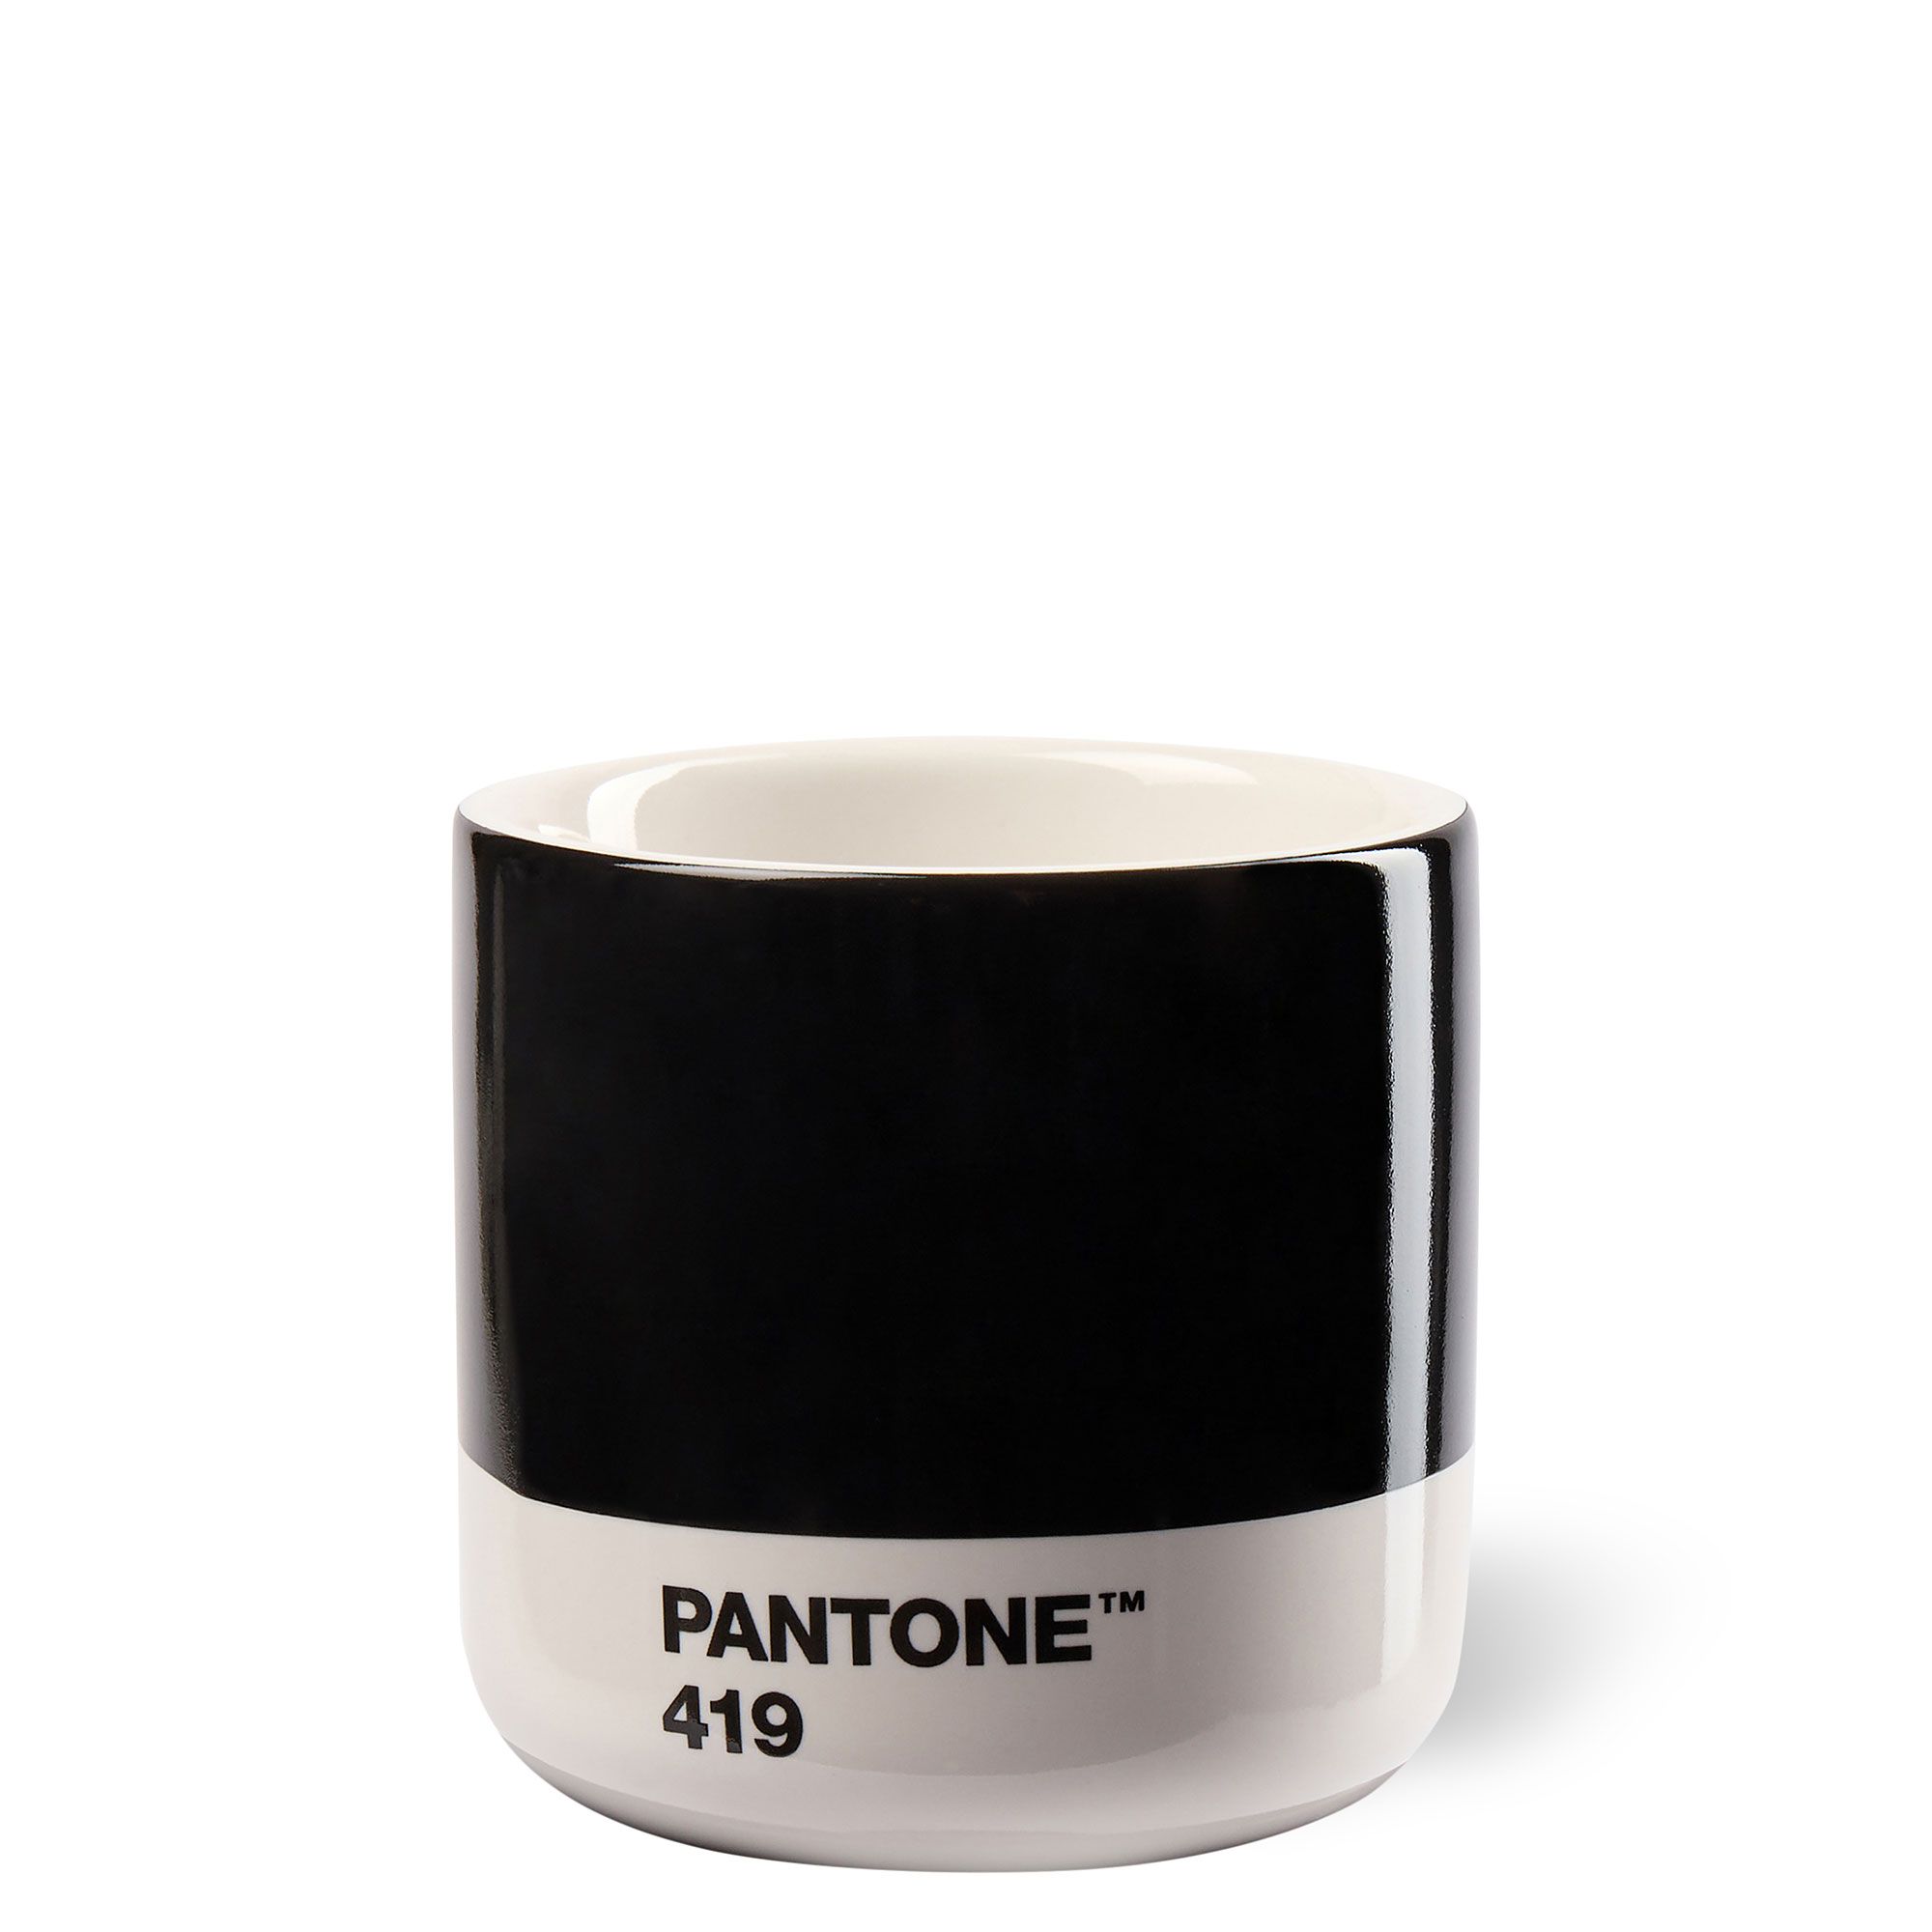 PANTONE Macchiato Cup Cool Gray 9 C.